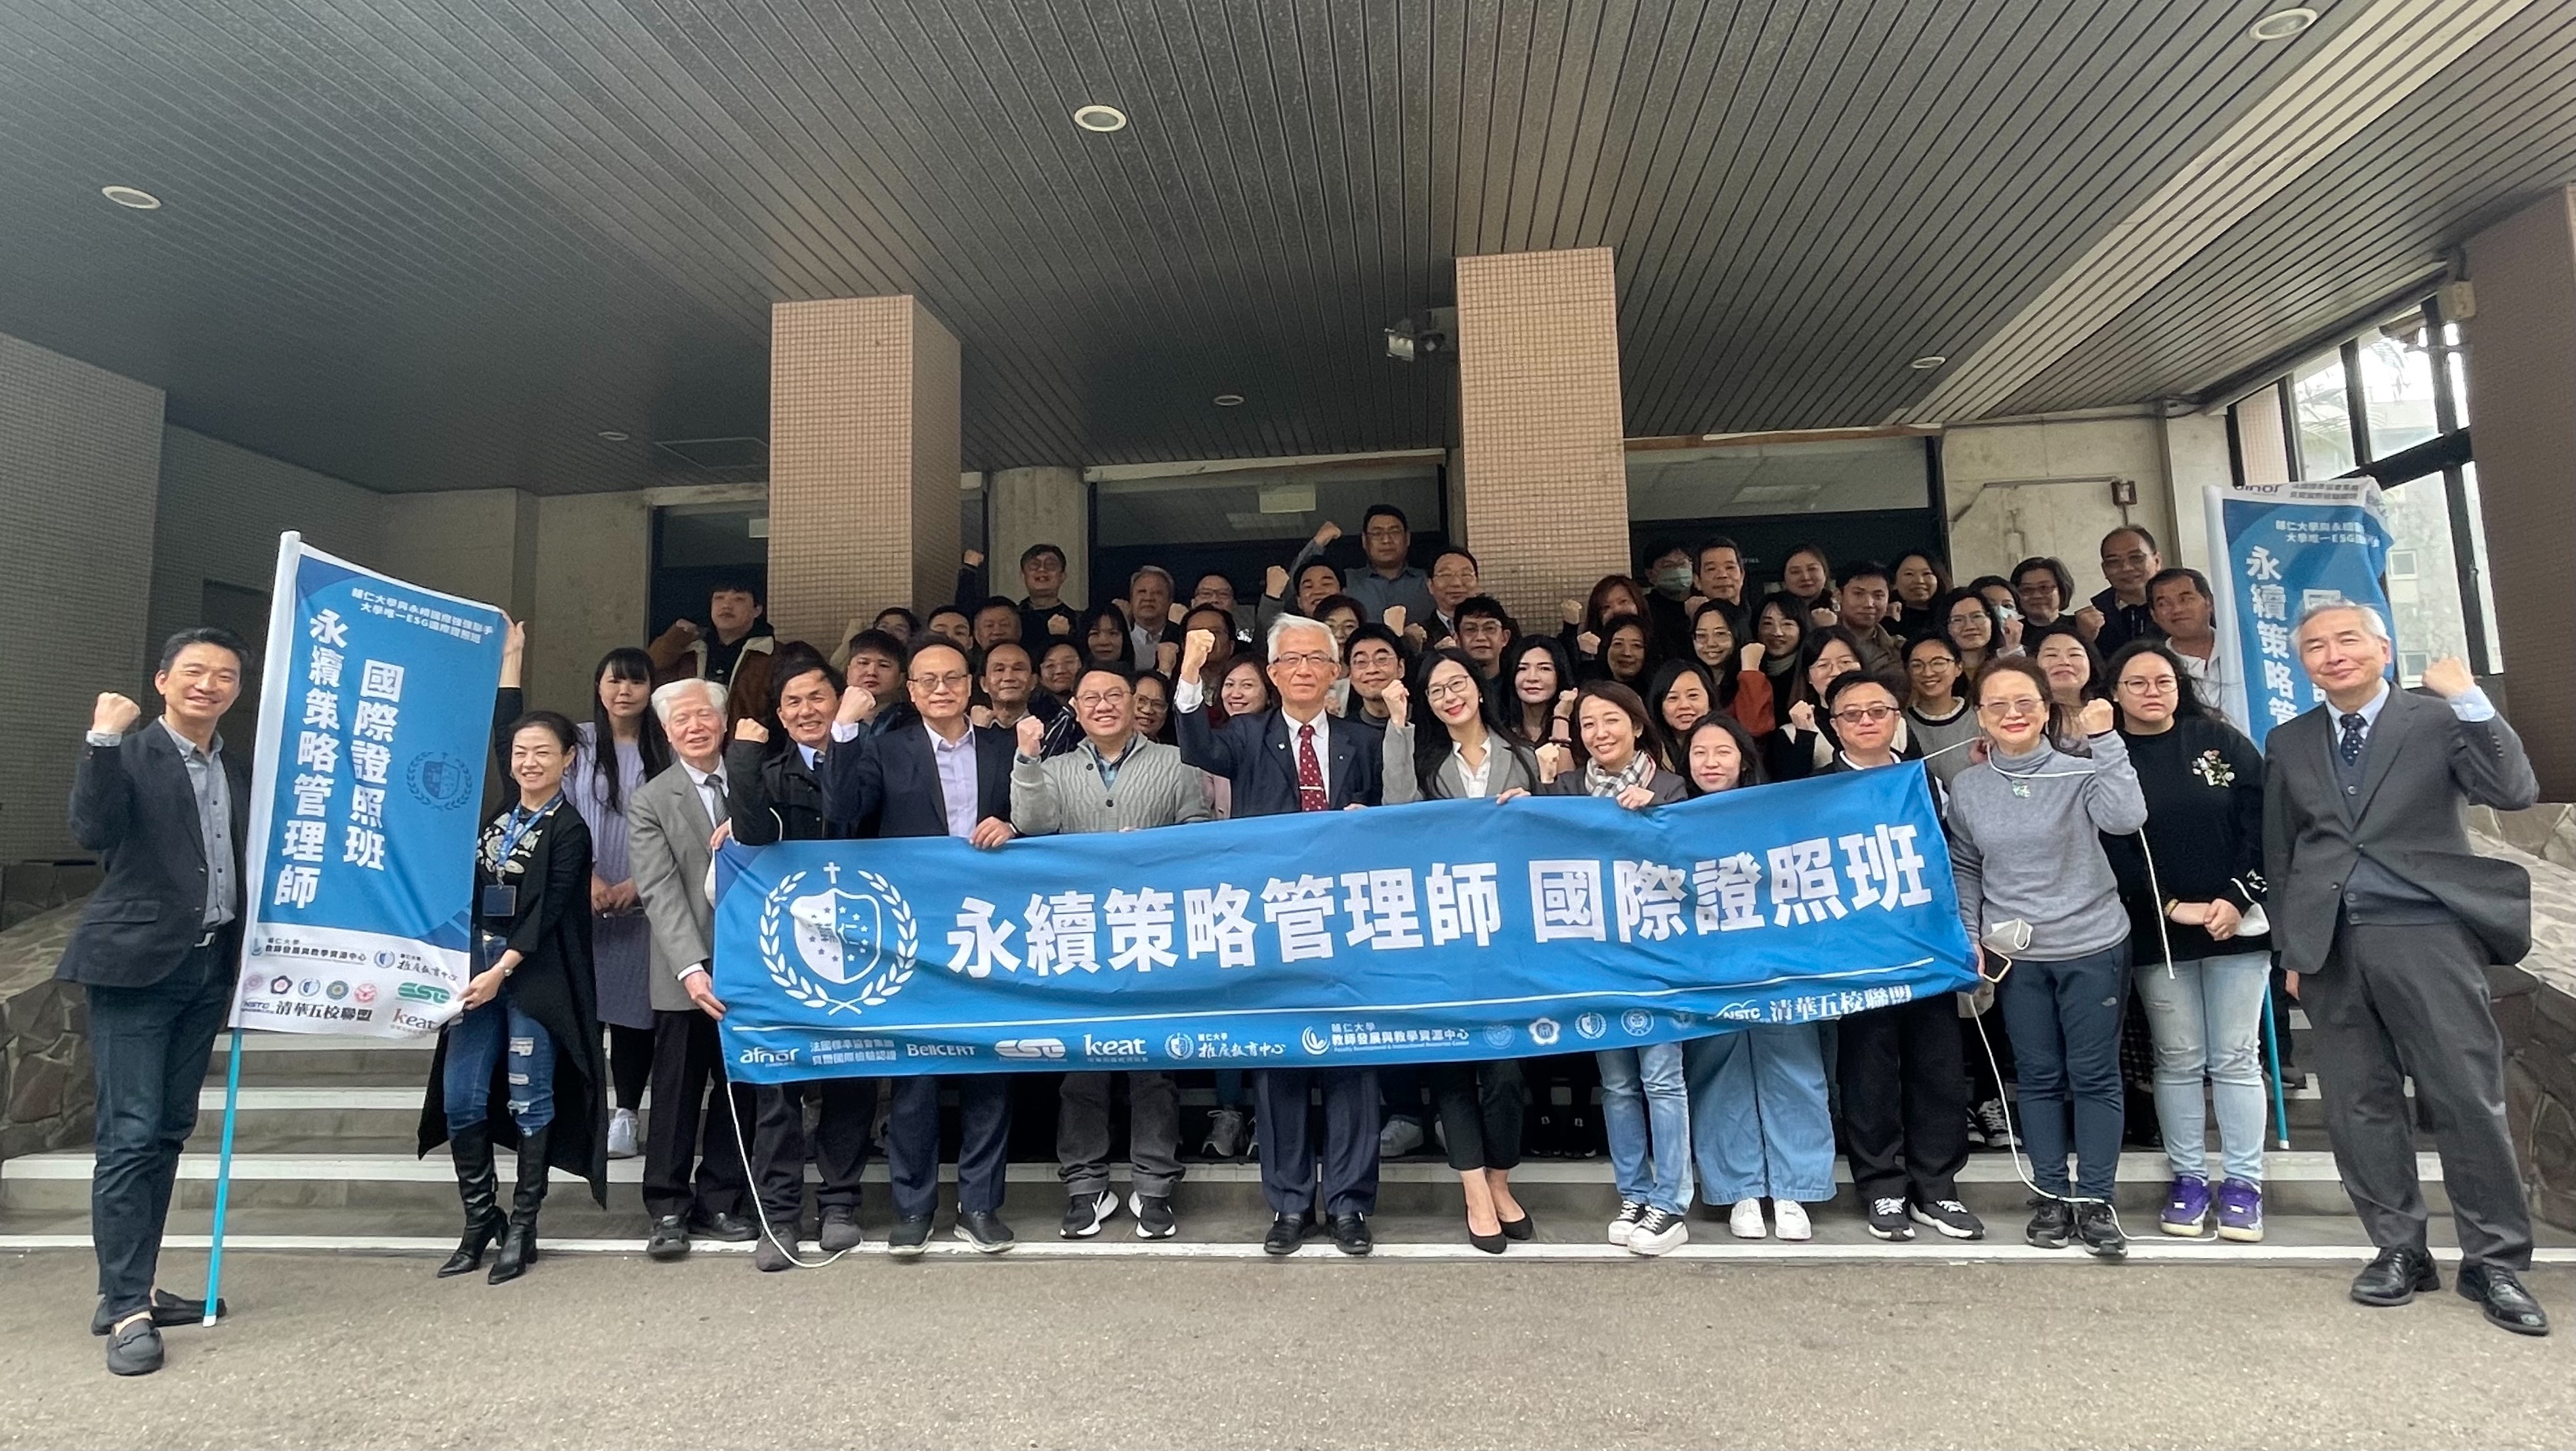 輔大與永續國際聯手開出全台灣第一期 「永續策略管理師國際證照班」